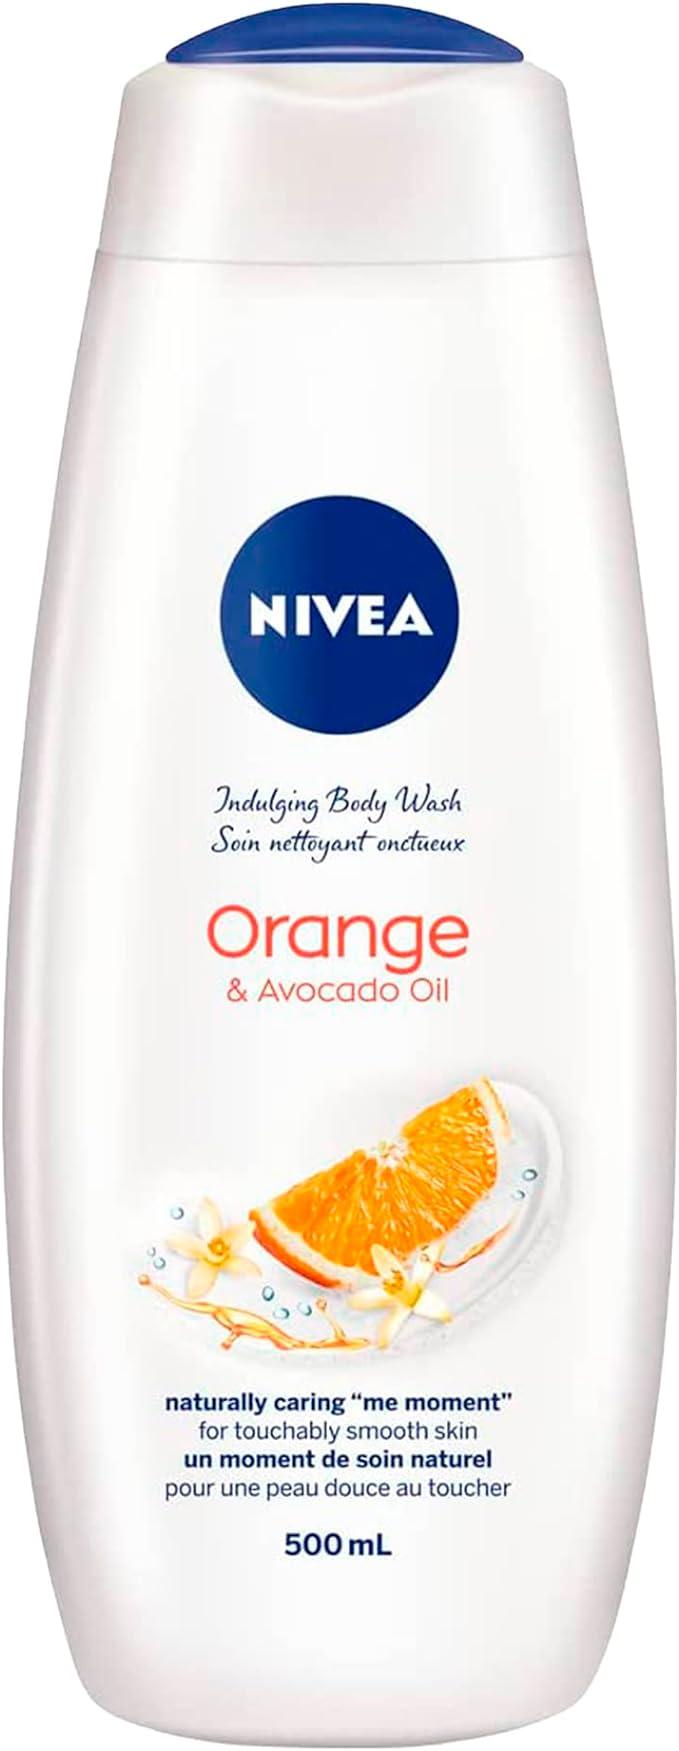 nivea orange and avocado oil body wash 500ml  nivea b00ciu07fi